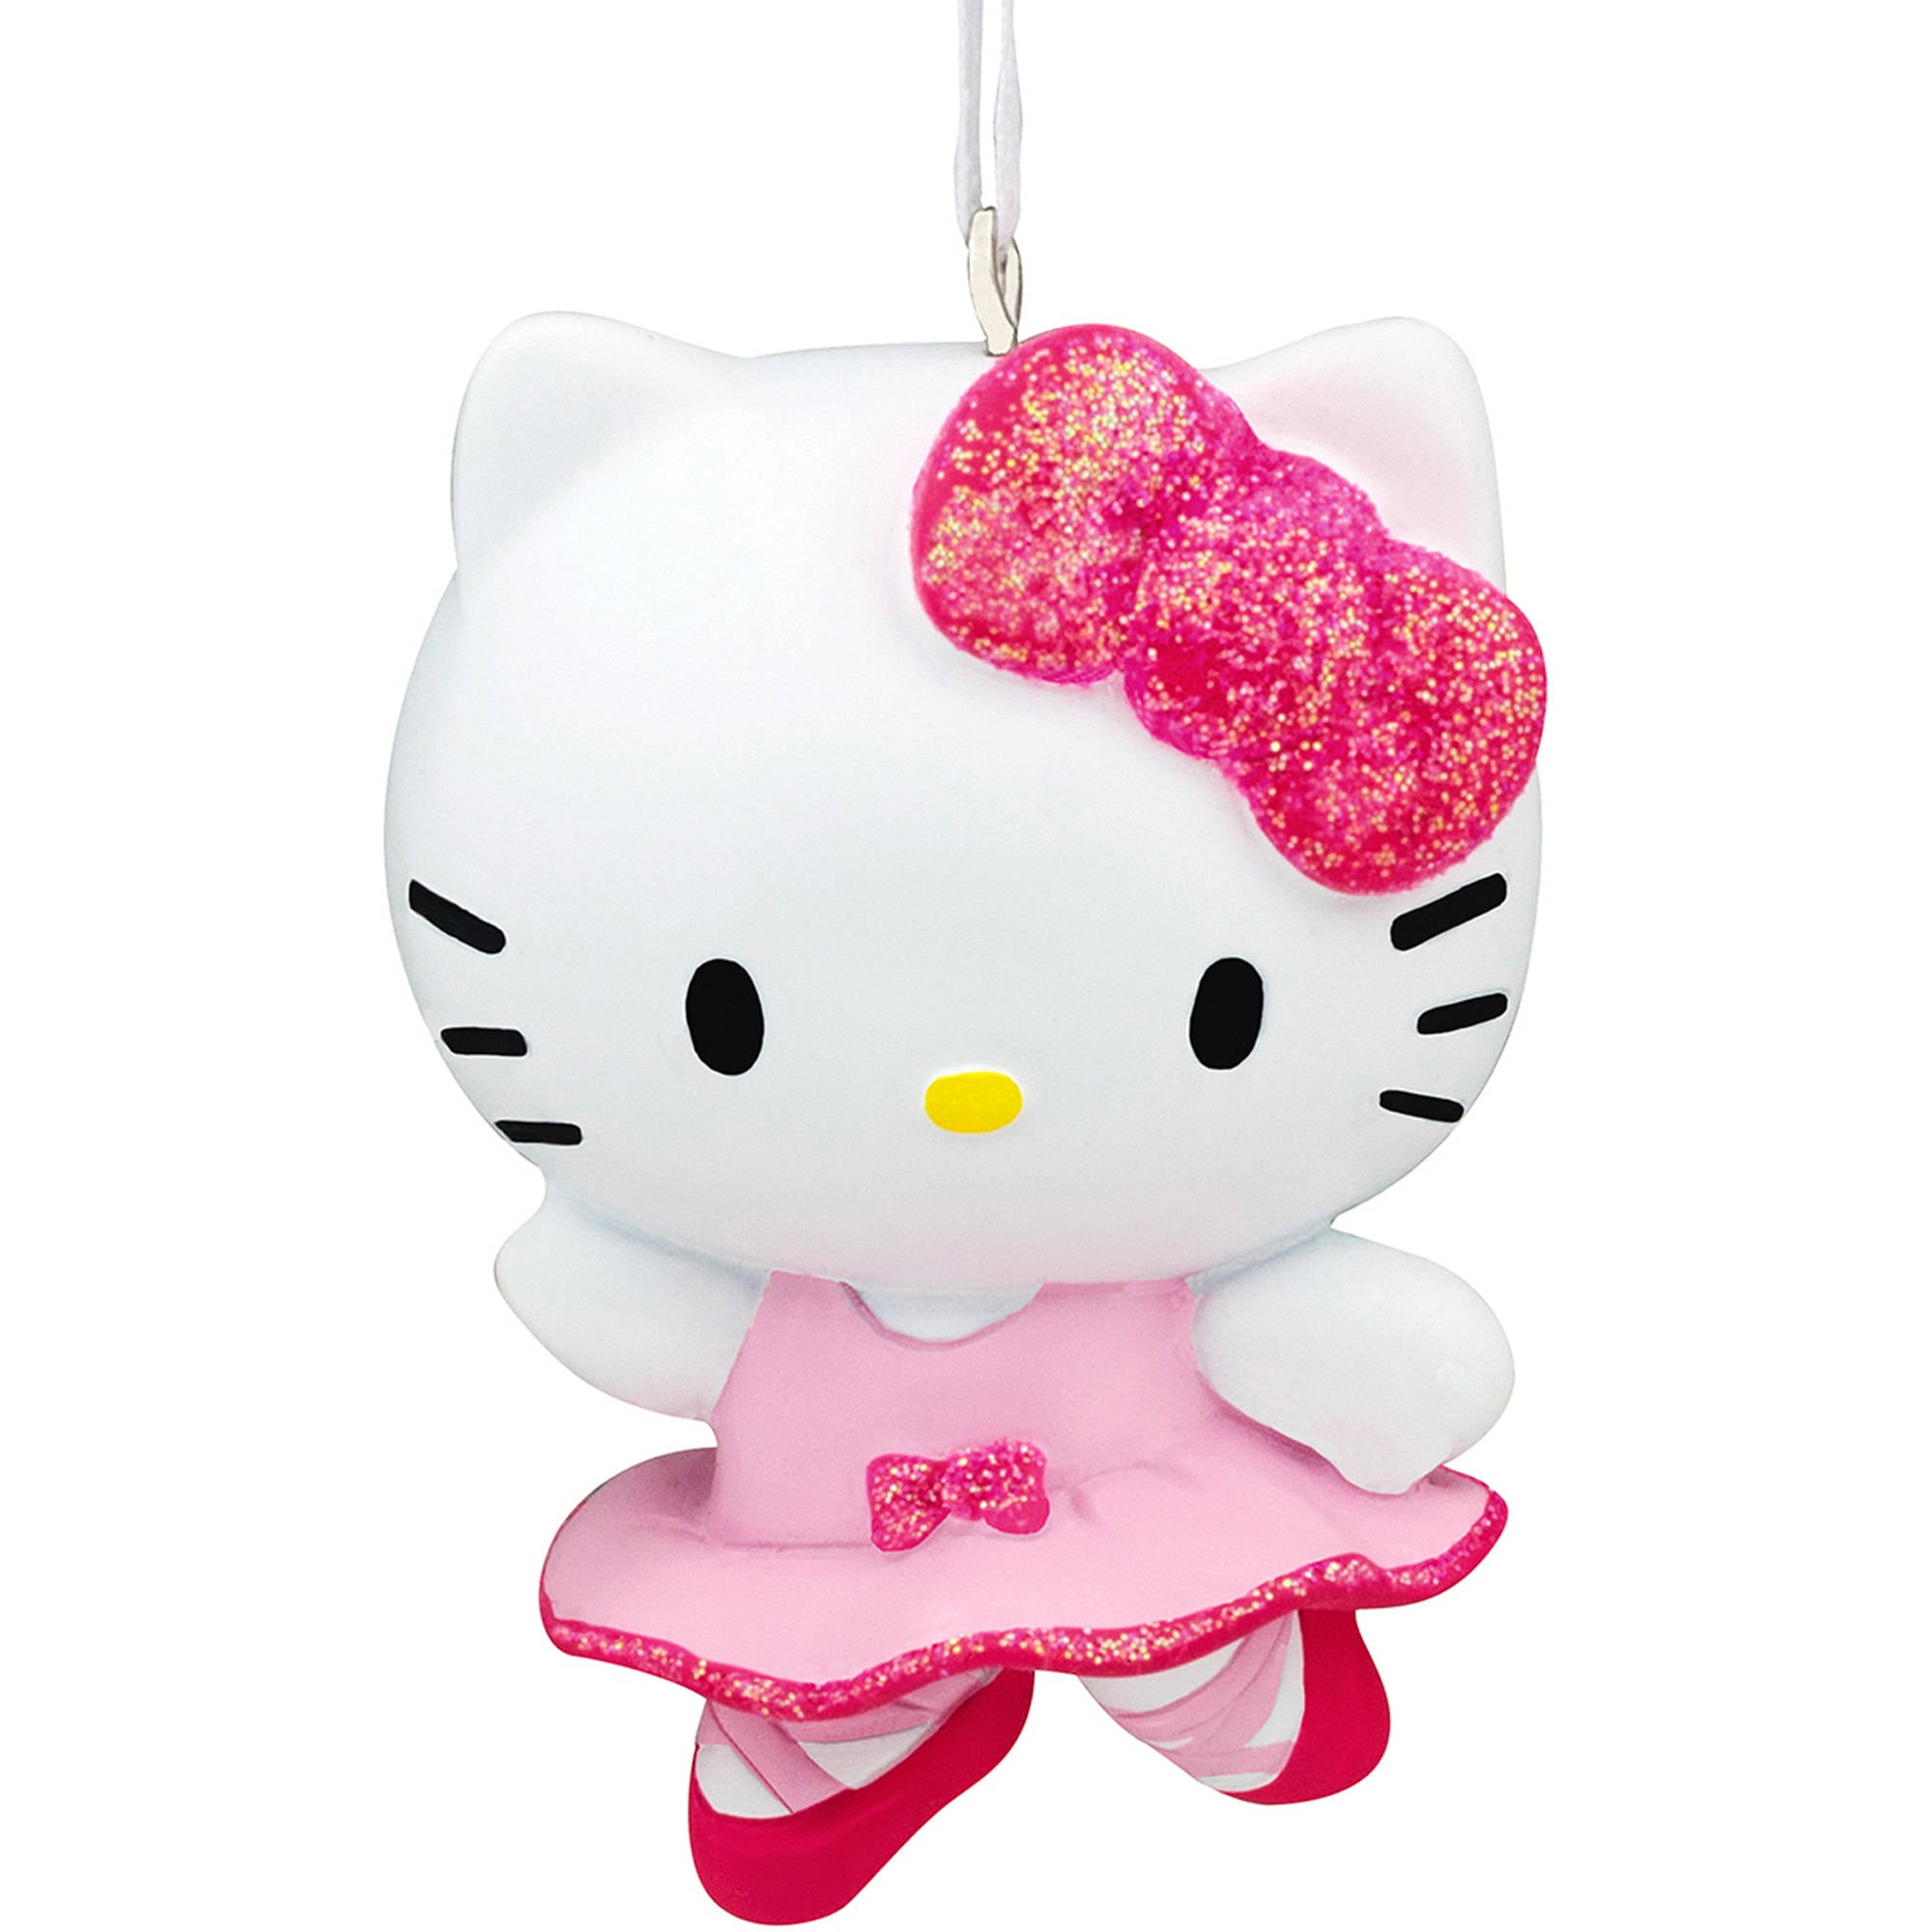 Hallmark Hello Kitty Ballerina  Ornament Walmart com 